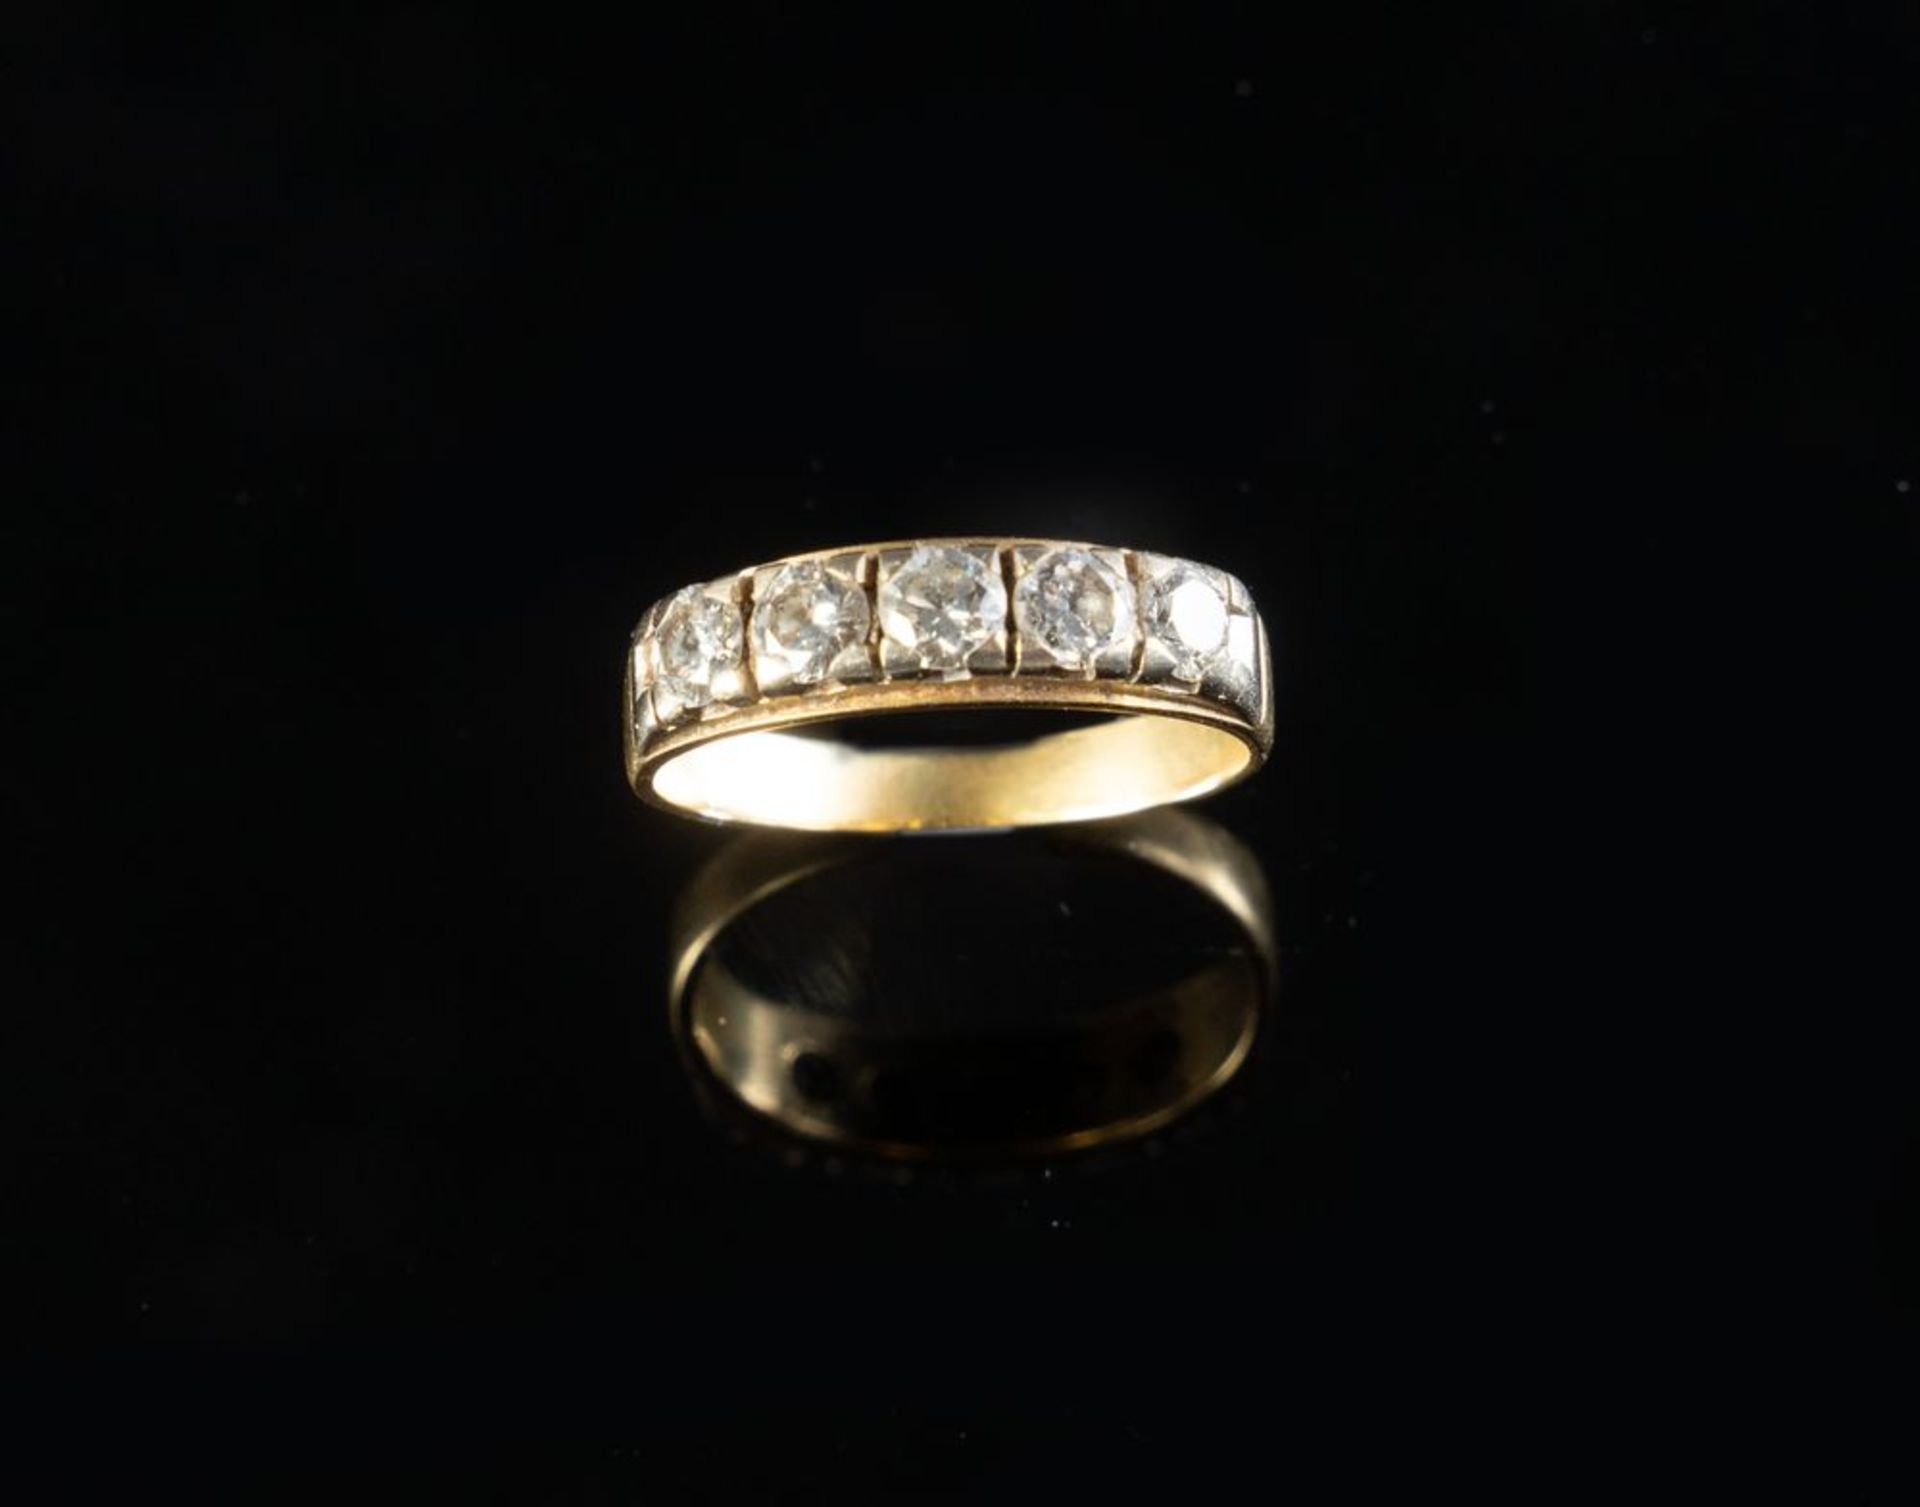 VERETTA CON 5 DIAMANTI IN ORO GIALLO
Veretta in oro giallo 18k con 5 diamanti taglio brillante roton - Bild 2 aus 2